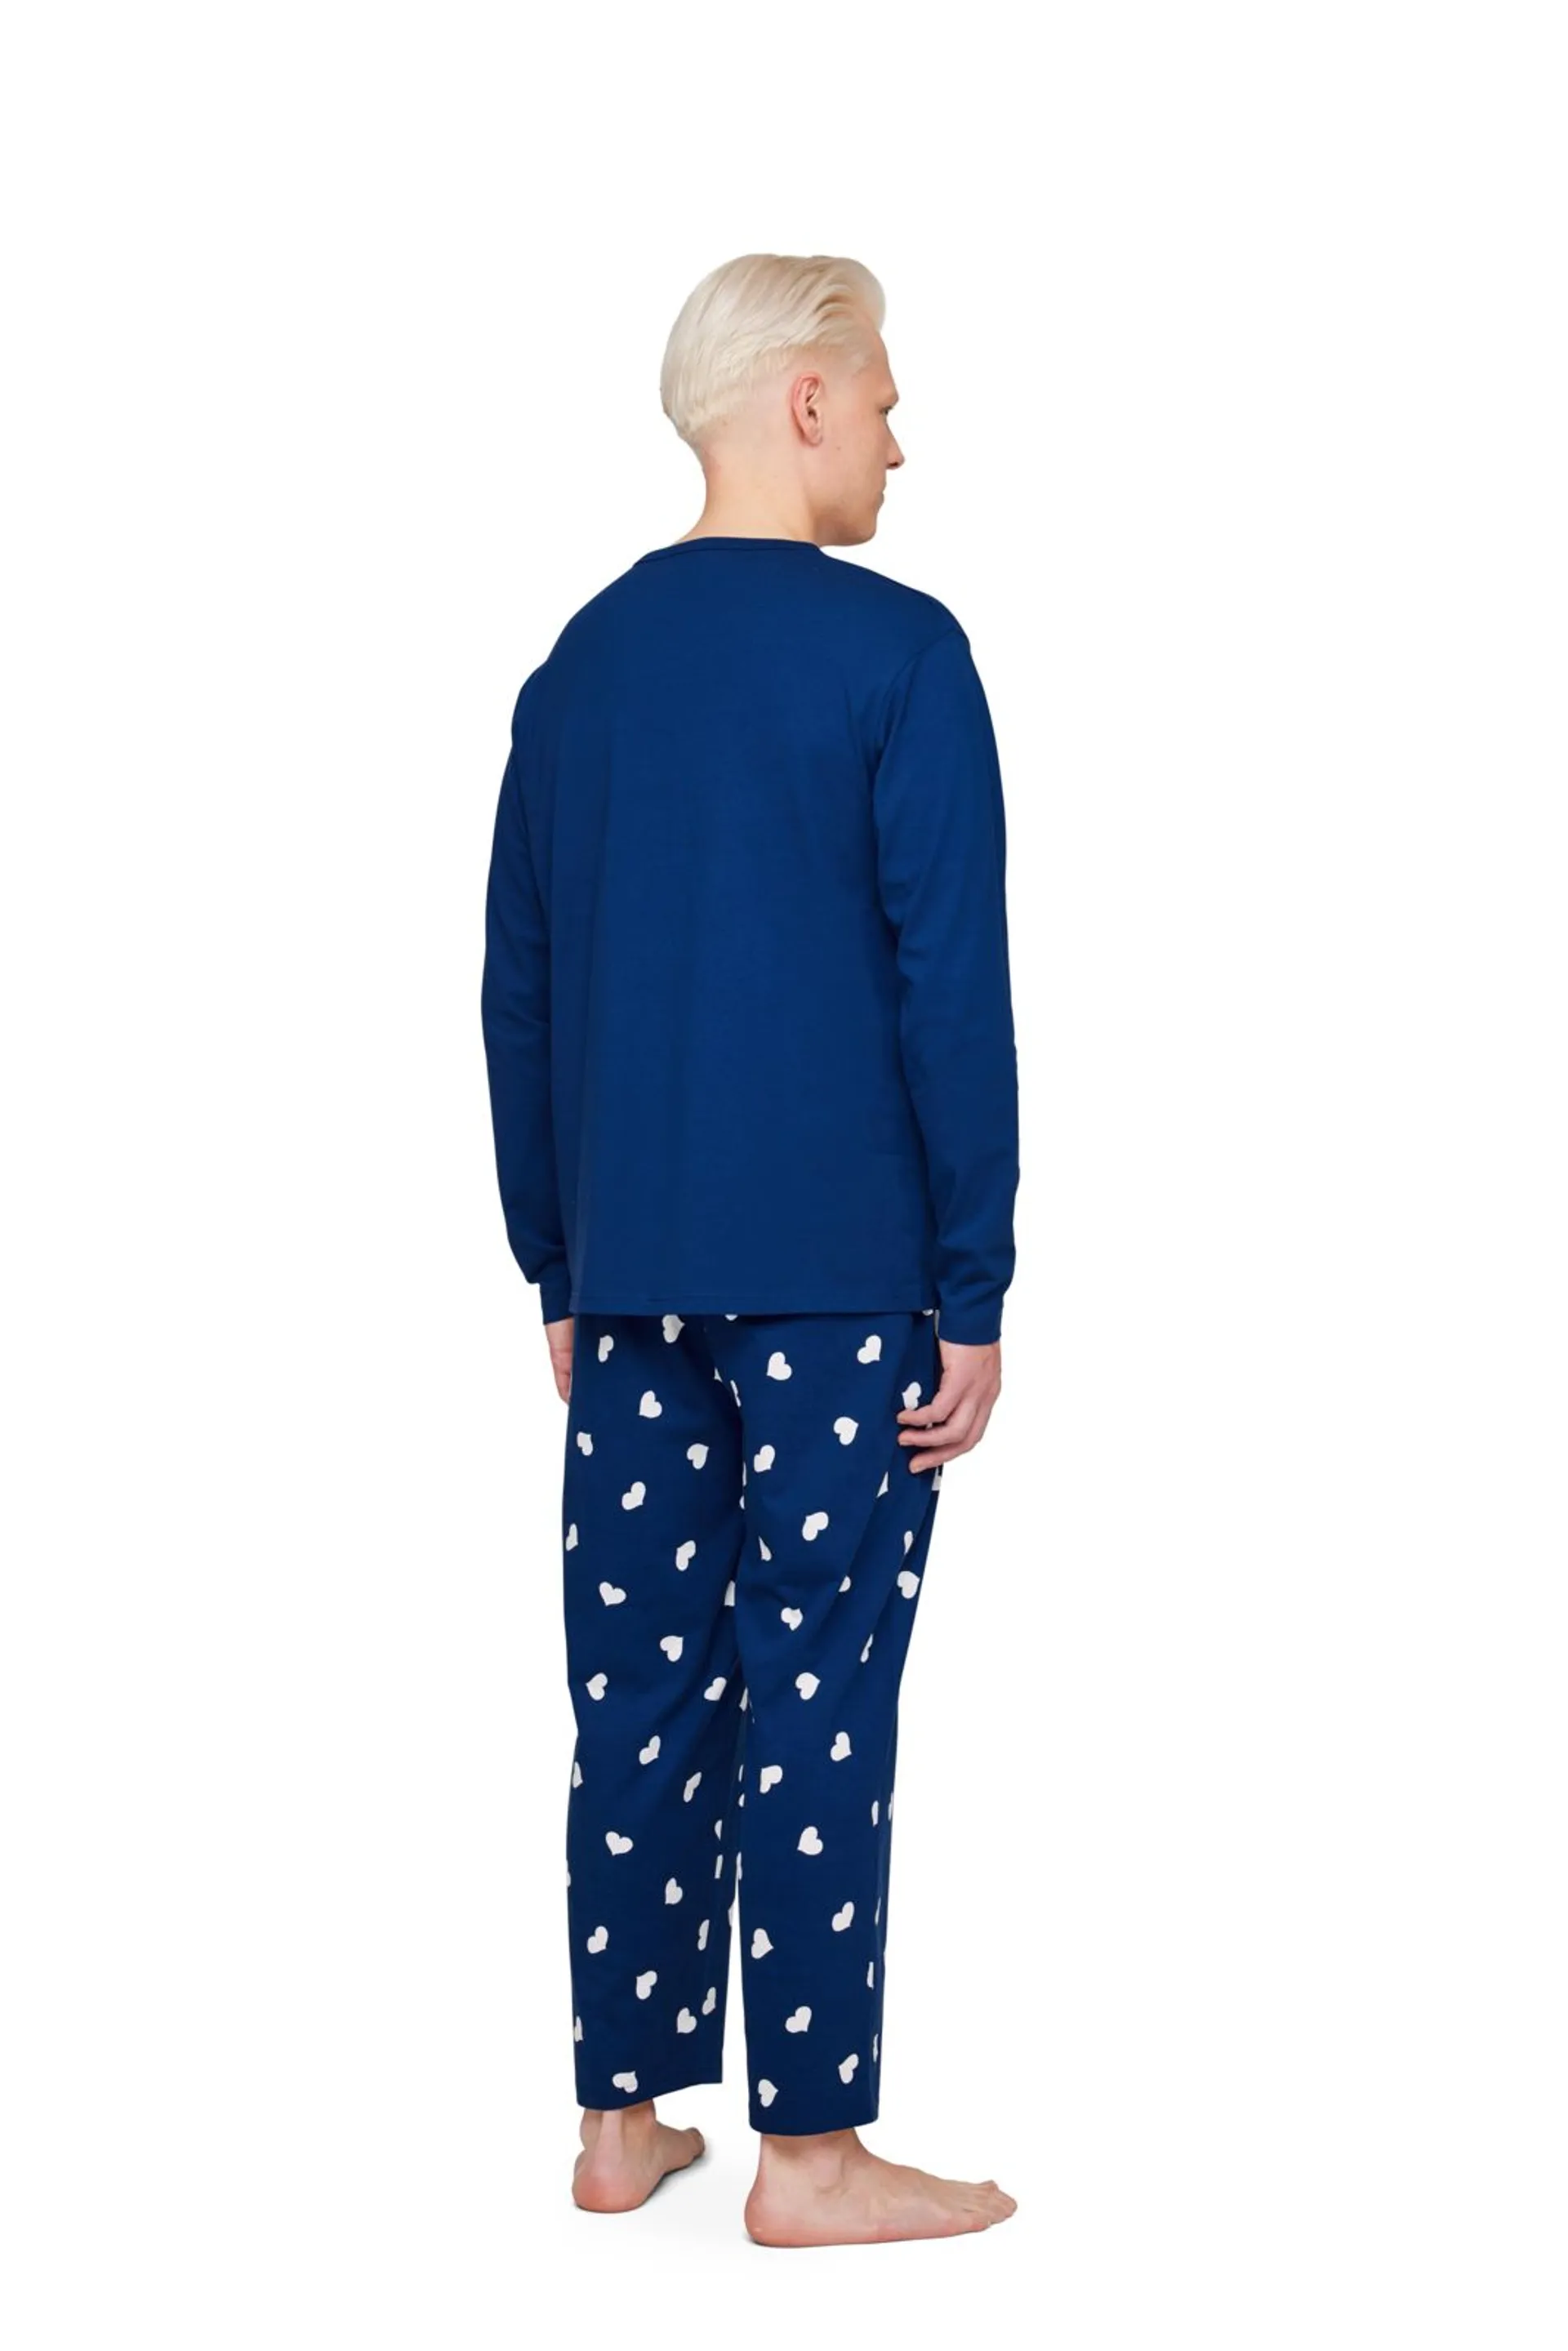 Finlayson Arkismi miesten pyjama Onni - Blue - 3